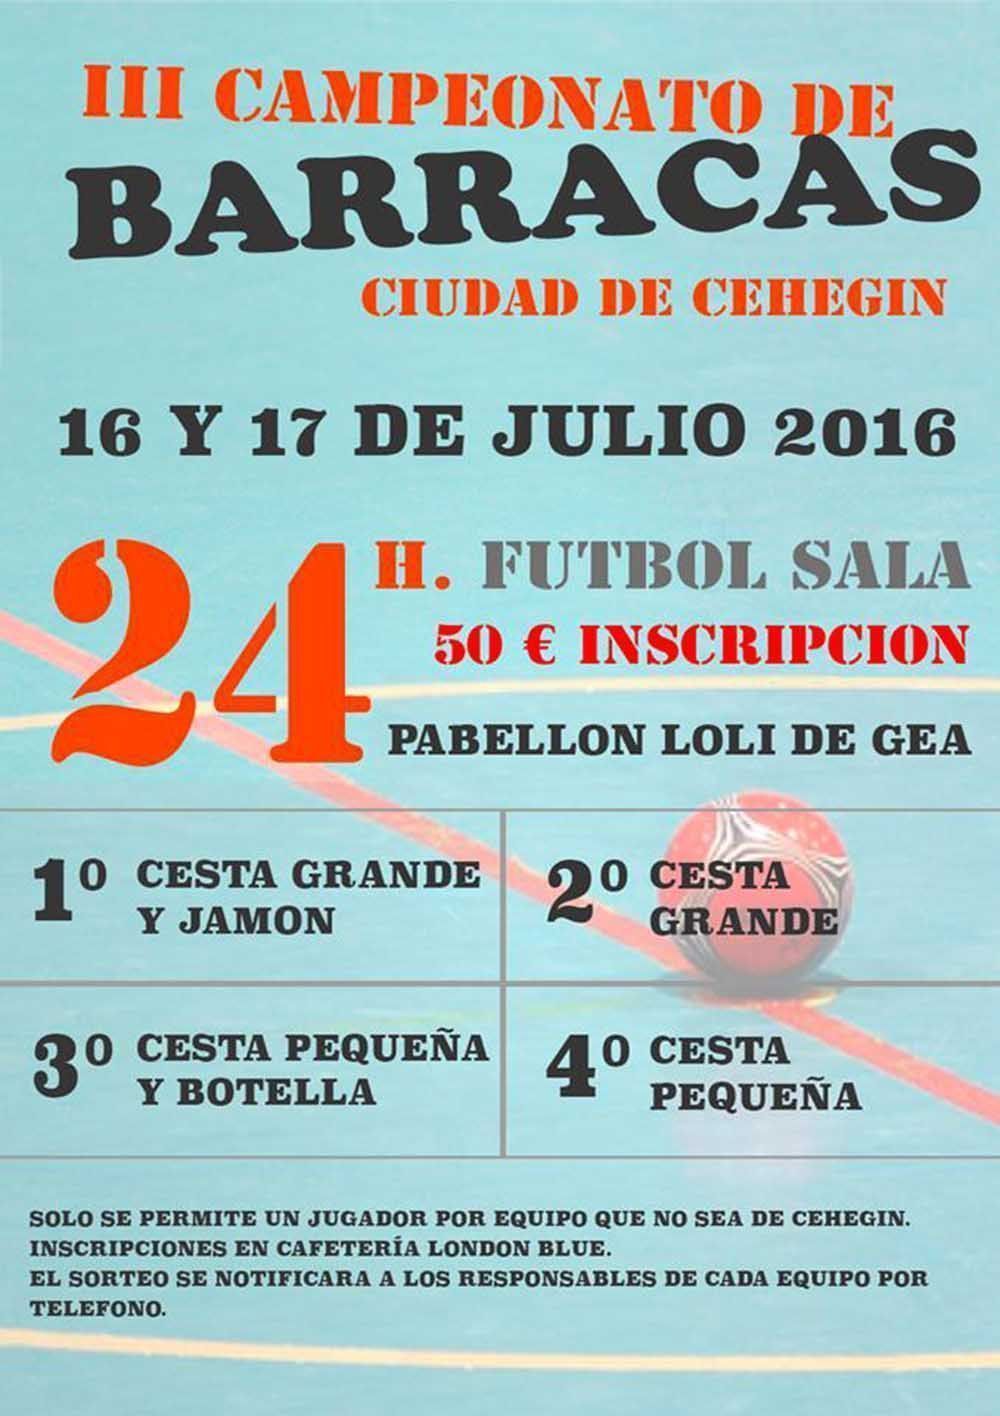 El III Campeonato de Fútbol Sala de Barracas “Ciudad de Cehegín, se celebrará los días 16 y 17 de julio en el Pabellón “Loli de Gea”